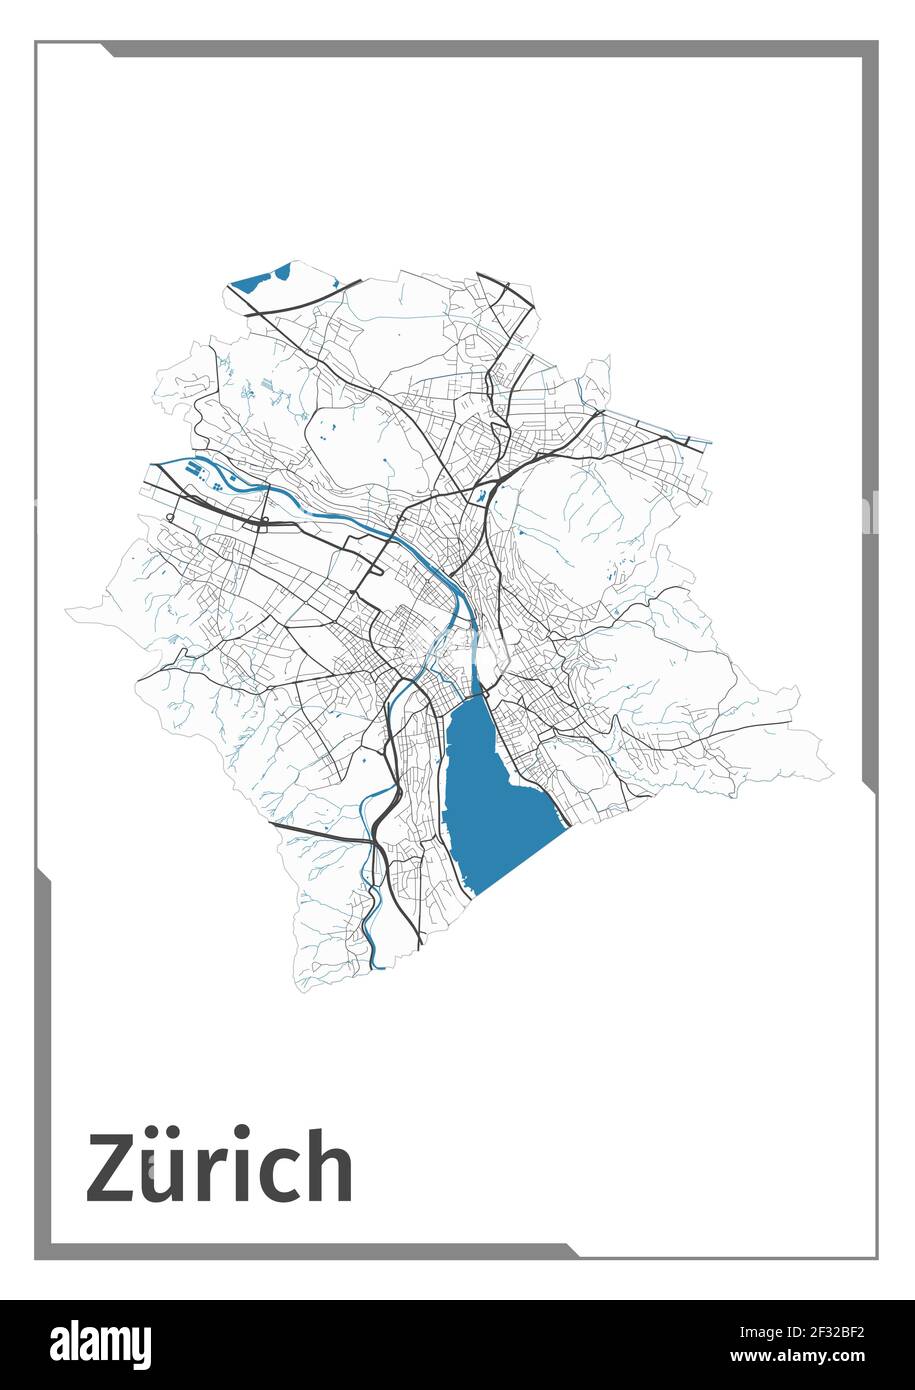 Affiche carte de Zurich, vue plan de la zone administrative. Noir, blanc et bleu carte détaillée de la ville de Zurich avec ses rivières et ses rues. Contour de la silhouette Illustration de Vecteur